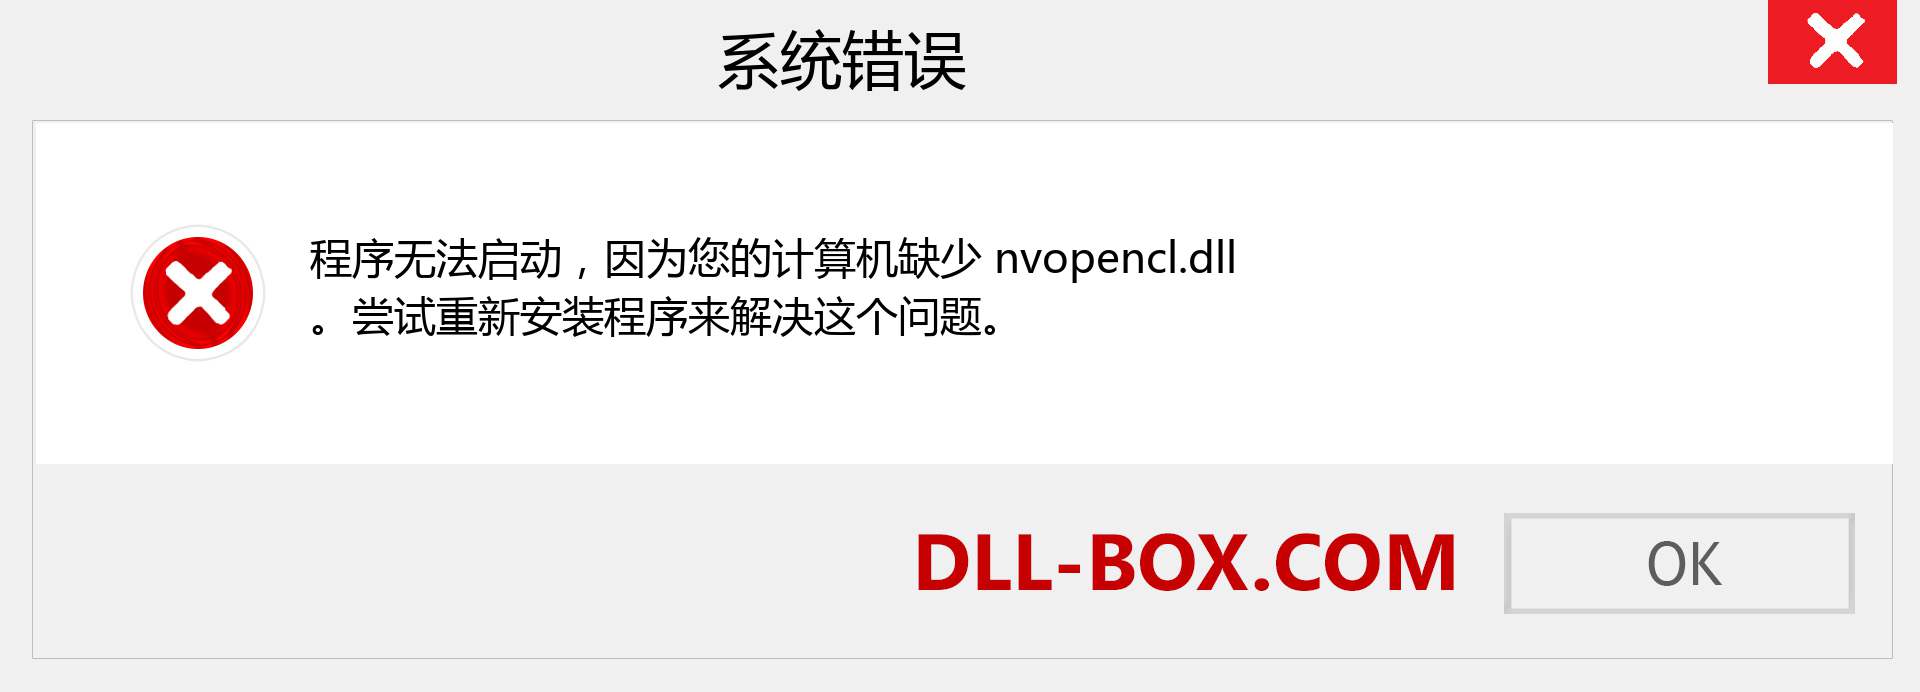 nvopencl.dll 文件丢失？。 适用于 Windows 7、8、10 的下载 - 修复 Windows、照片、图像上的 nvopencl dll 丢失错误